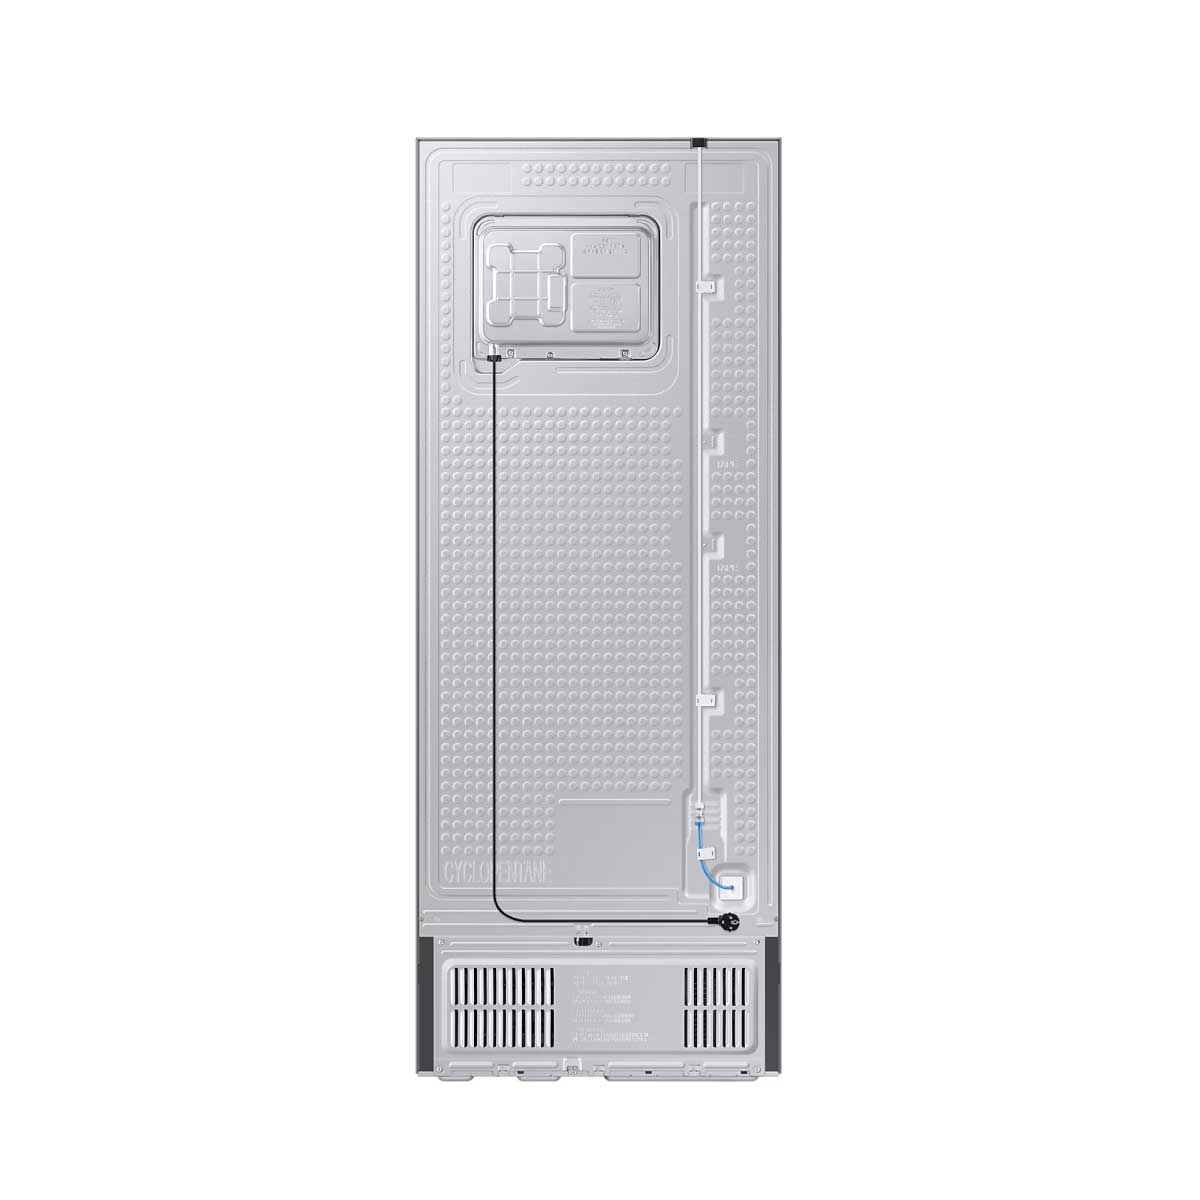 SAMSUNG ตู้เย็น BESPOKE 2 Doors Auto ice สีดำ 16.2 Q Wifi รุ่น RT47CB668422ST